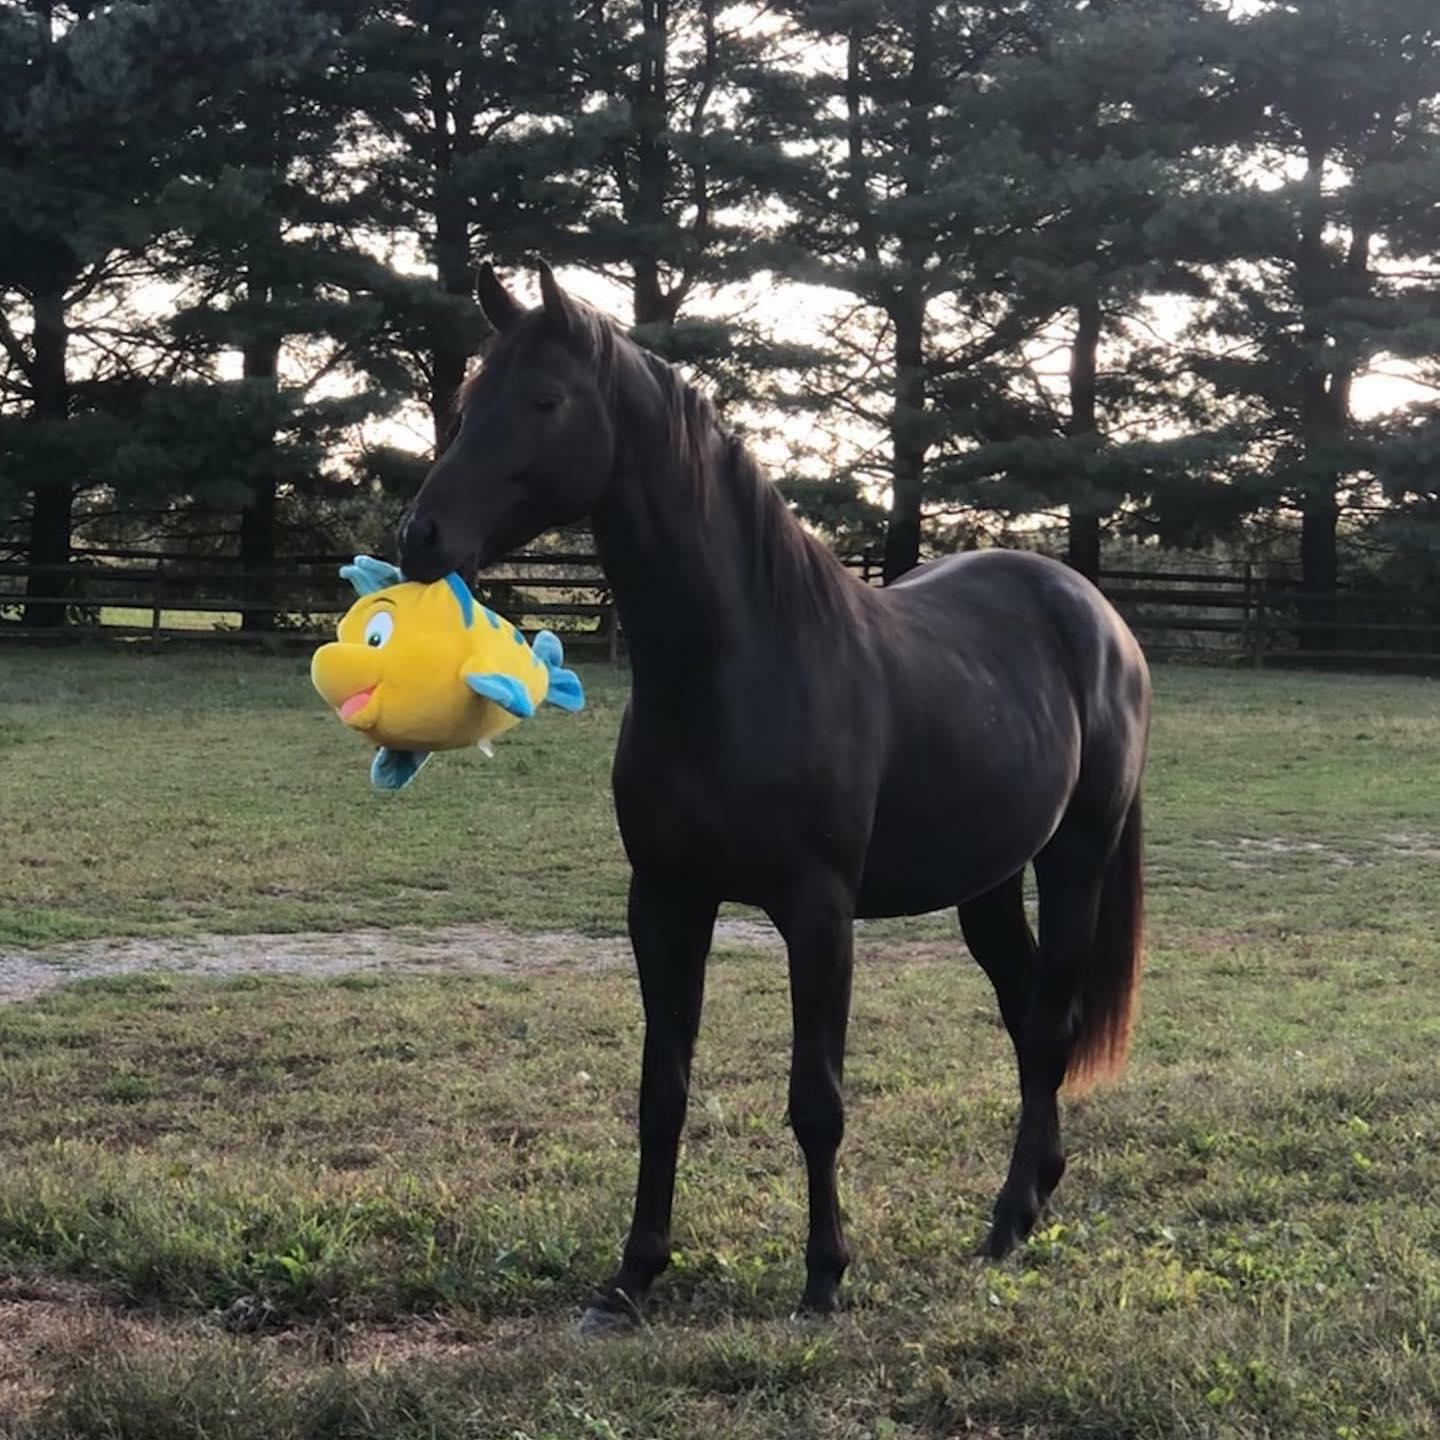 Le cheval de mon ami montre sa nouvelle peluche. Il en est très fier.